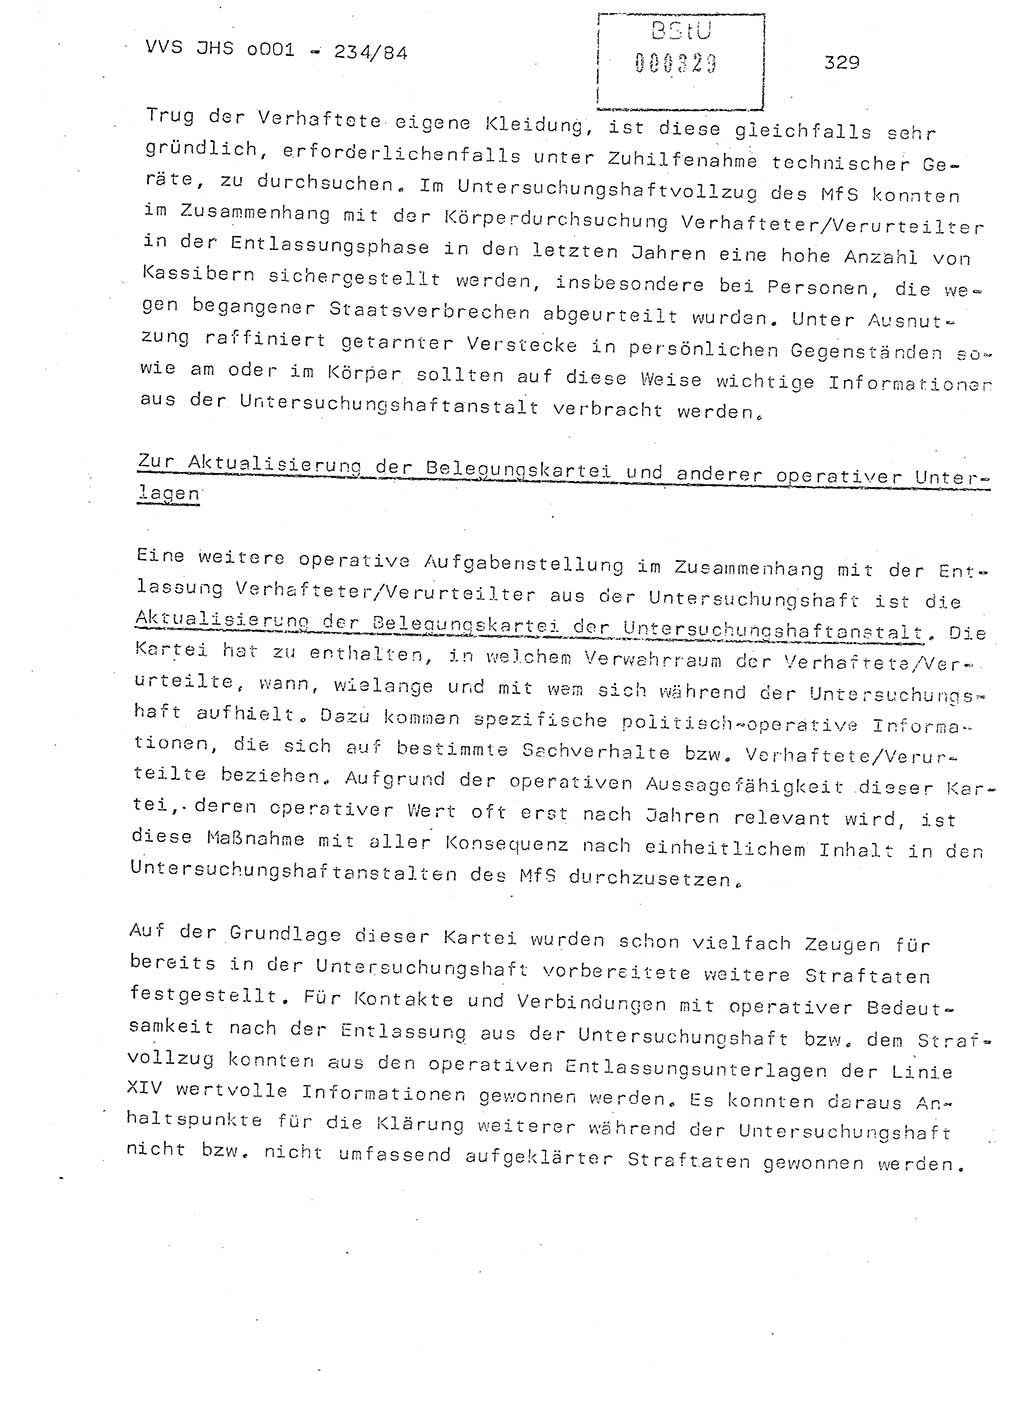 Dissertation Oberst Siegfried Rataizick (Abt. ⅩⅣ), Oberstleutnant Volkmar Heinz (Abt. ⅩⅣ), Oberstleutnant Werner Stein (HA Ⅸ), Hauptmann Heinz Conrad (JHS), Ministerium für Staatssicherheit (MfS) [Deutsche Demokratische Republik (DDR)], Juristische Hochschule (JHS), Vertrauliche Verschlußsache (VVS) o001-234/84, Potsdam 1984, Seite 329 (Diss. MfS DDR JHS VVS o001-234/84 1984, S. 329)